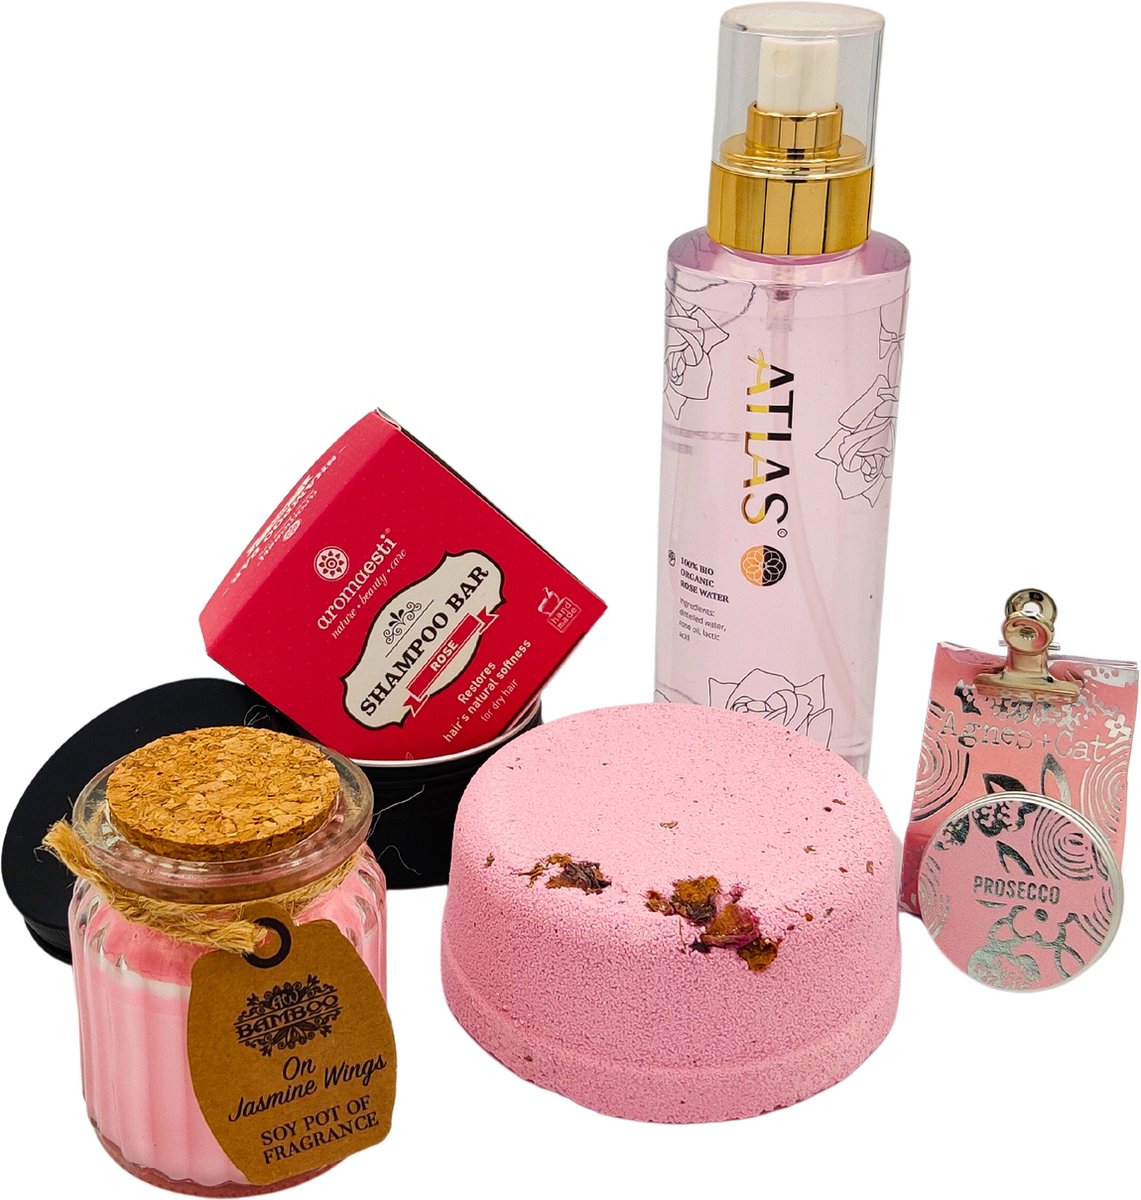 SOFTnaturals giftset Pink-3 heerlijke badproducten, een sojawaxkaarsje in een glazen potje en 1 amberblokje met miniraspje-giftset moederdag-verjaardagscadeautje-vegan cadeautje-cadeau idee-cadeauideetje-duurzaam kado